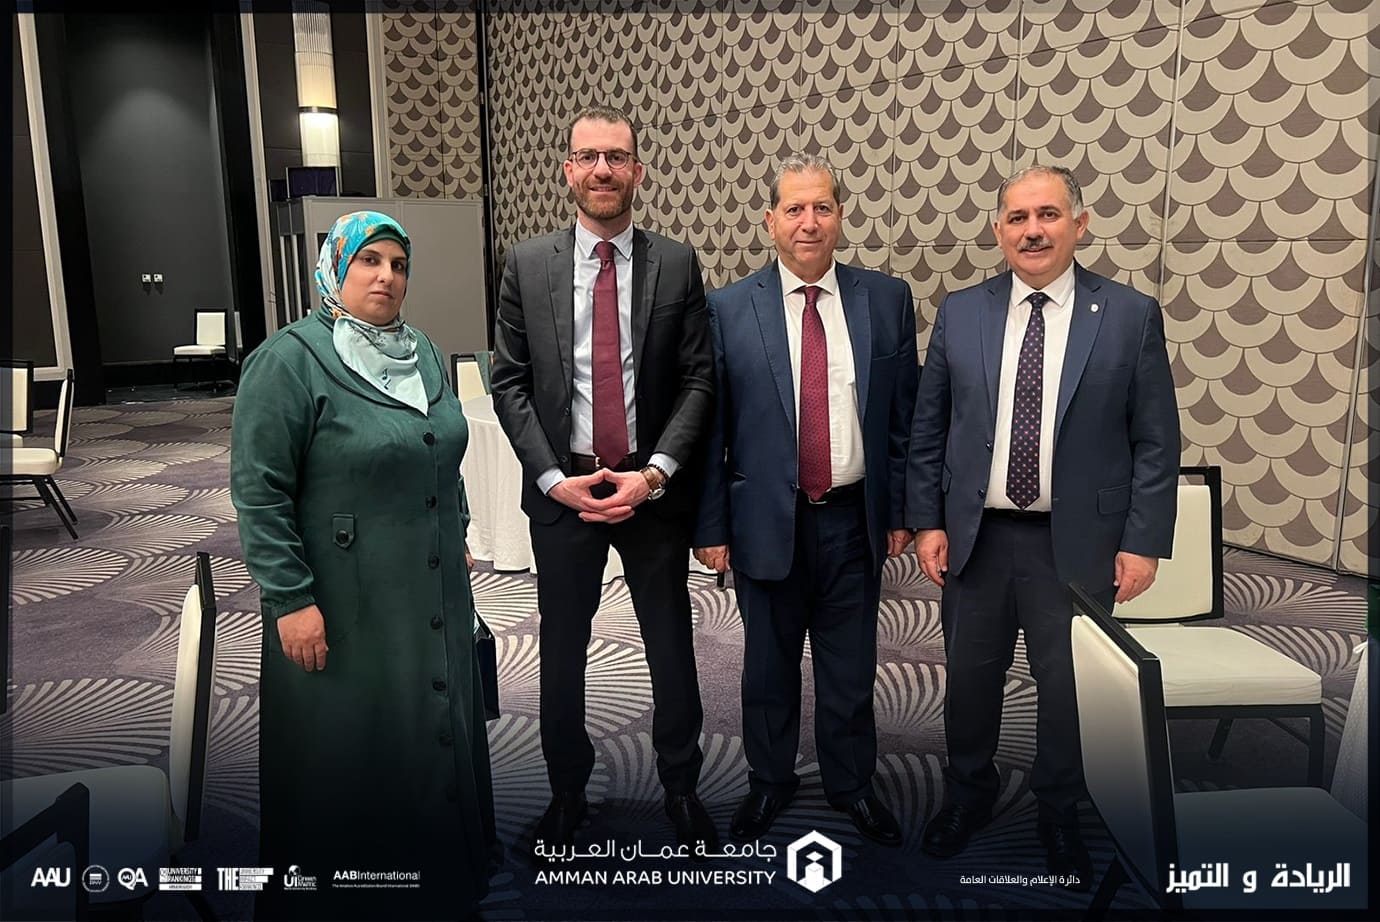  مشاركة فاعلة لجامعة عمان العربية في أعمال ملتقى التعليم العالي الأردني – التركي